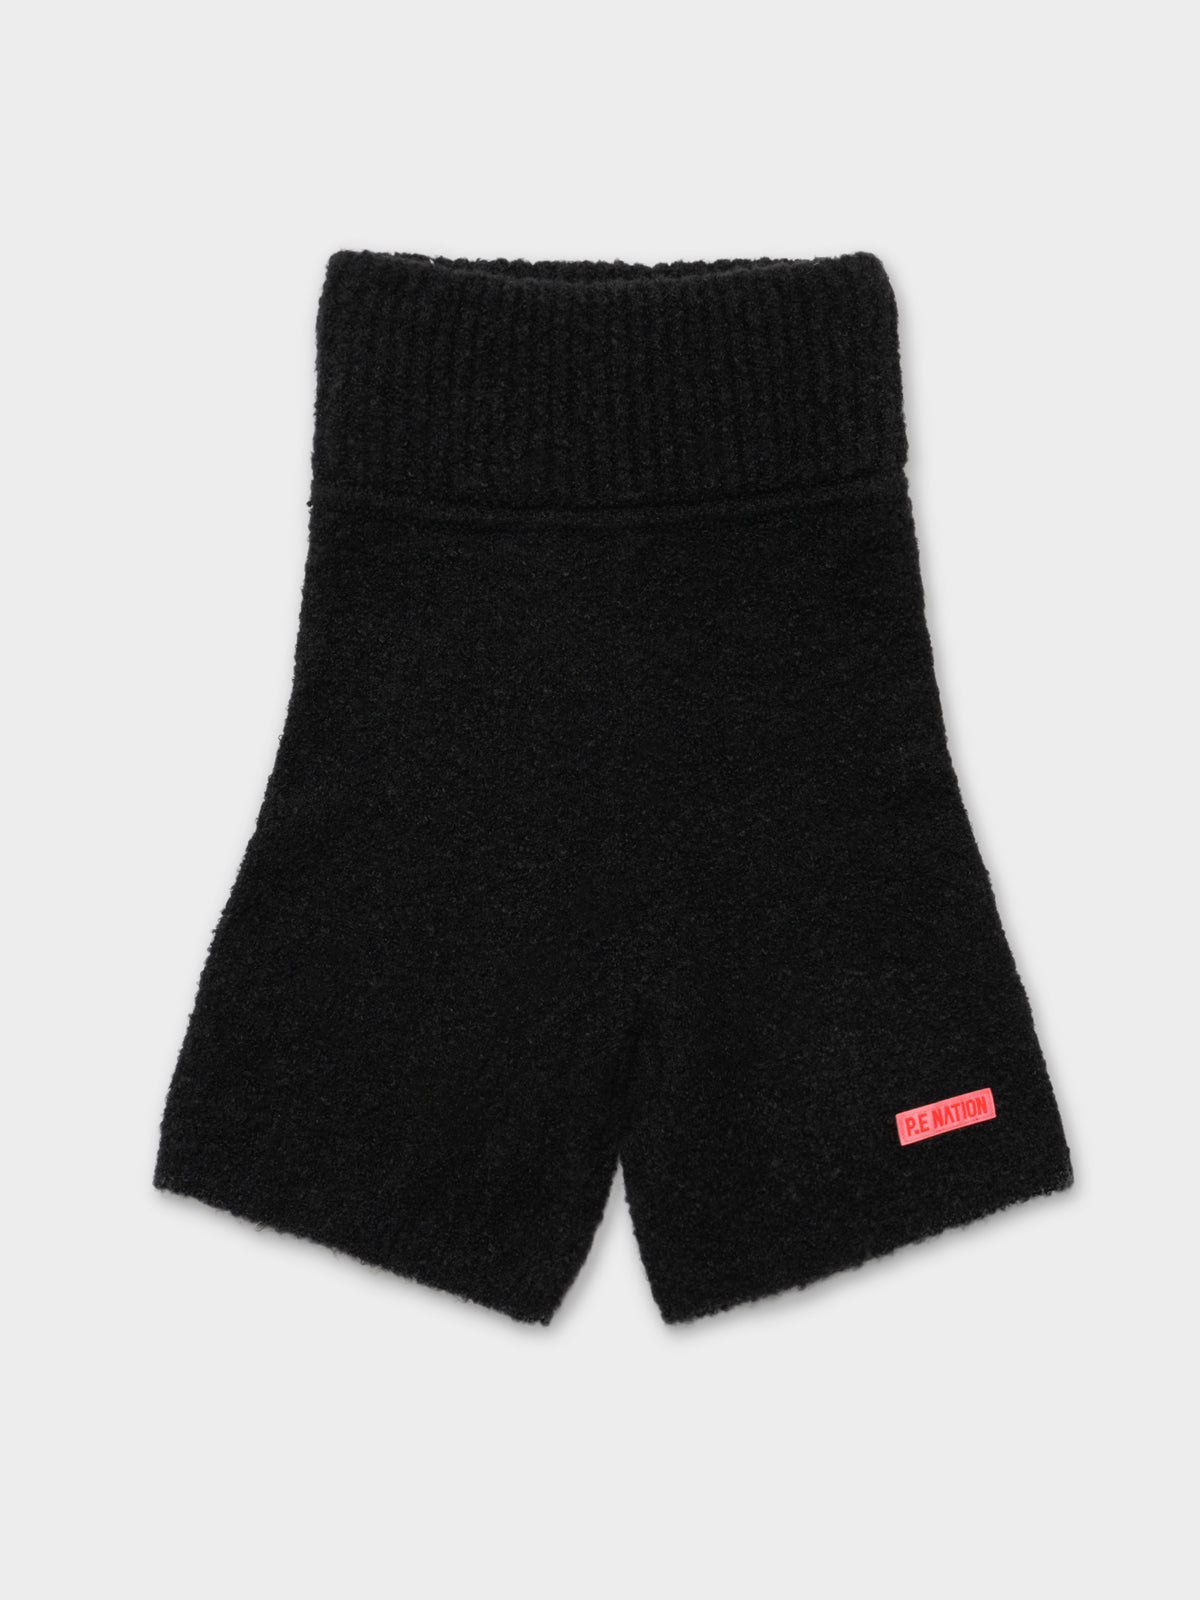 Triple Double Knit Shorts in Black